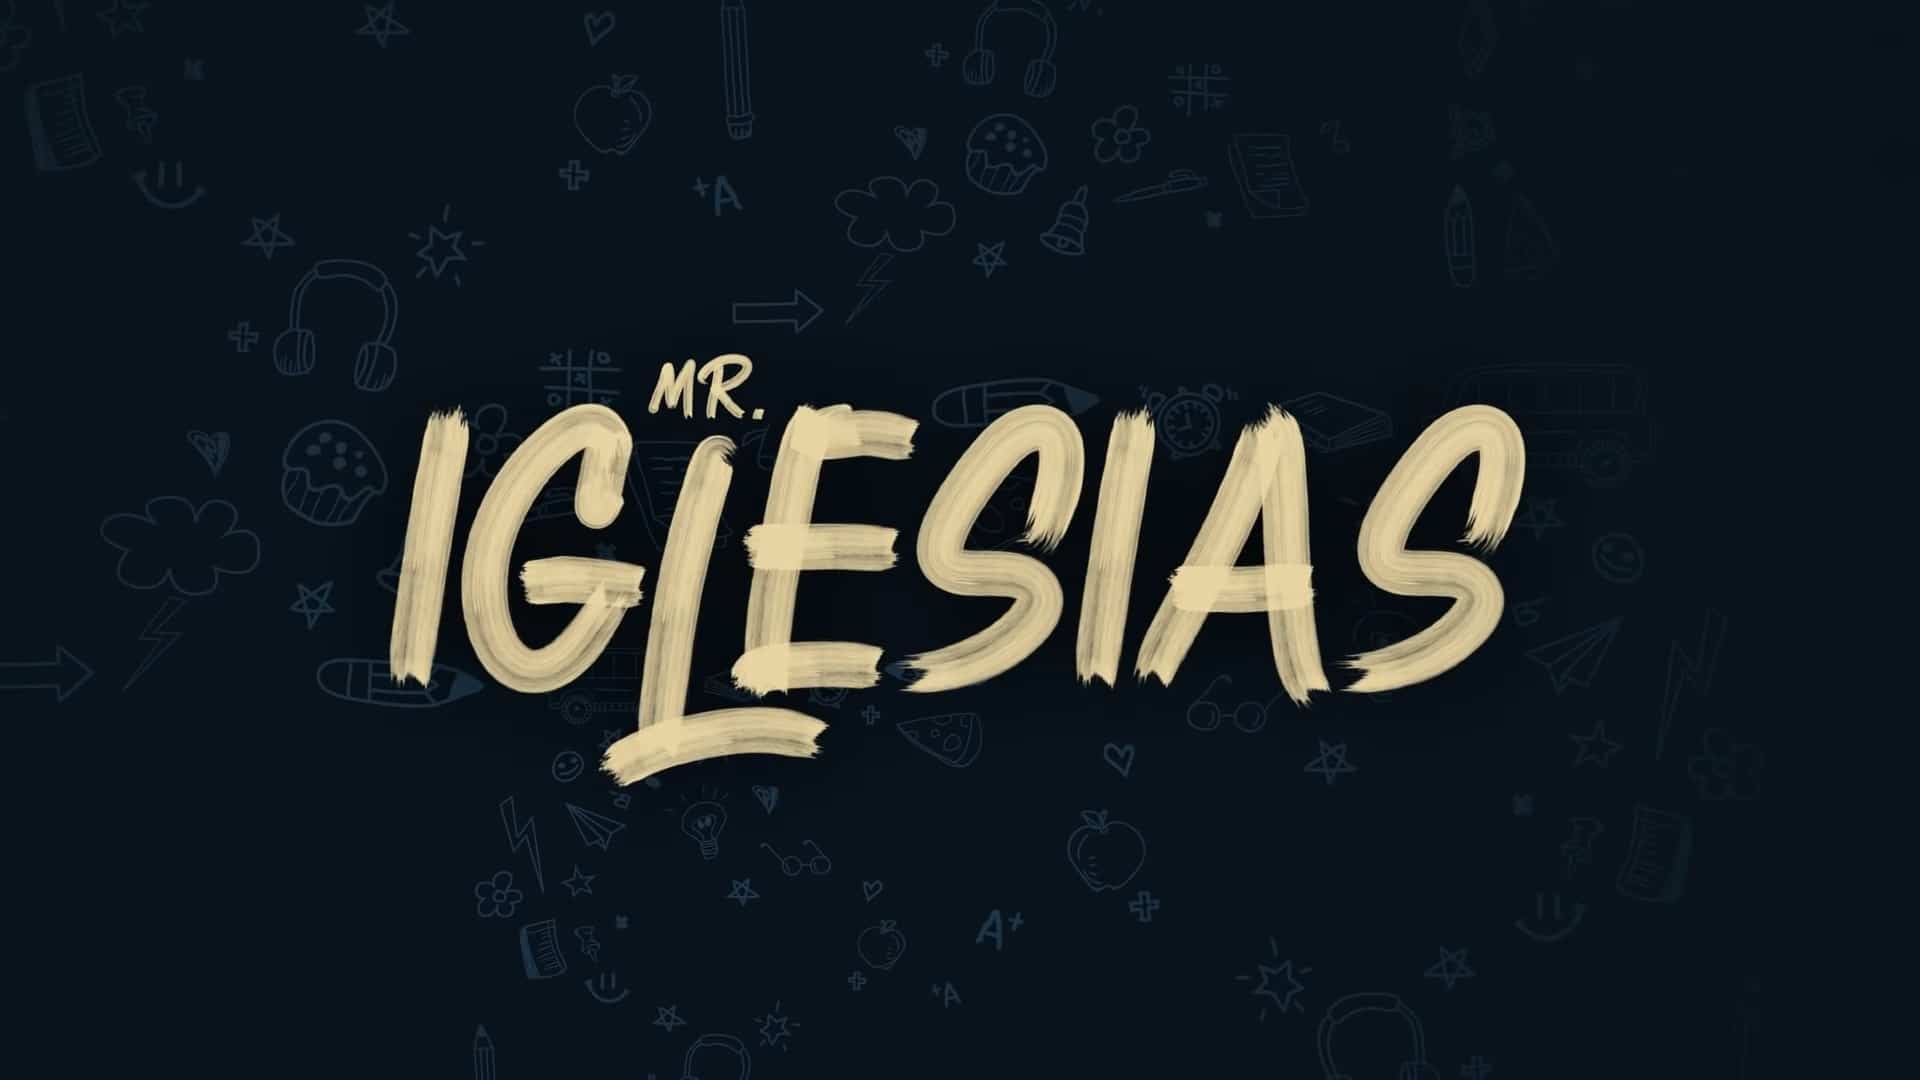 Netflix Mr Iglesias Part 2 Trailer, Netflix Comedy Series, Netflix Comedy Shows, Coming to Netflix in June 2020